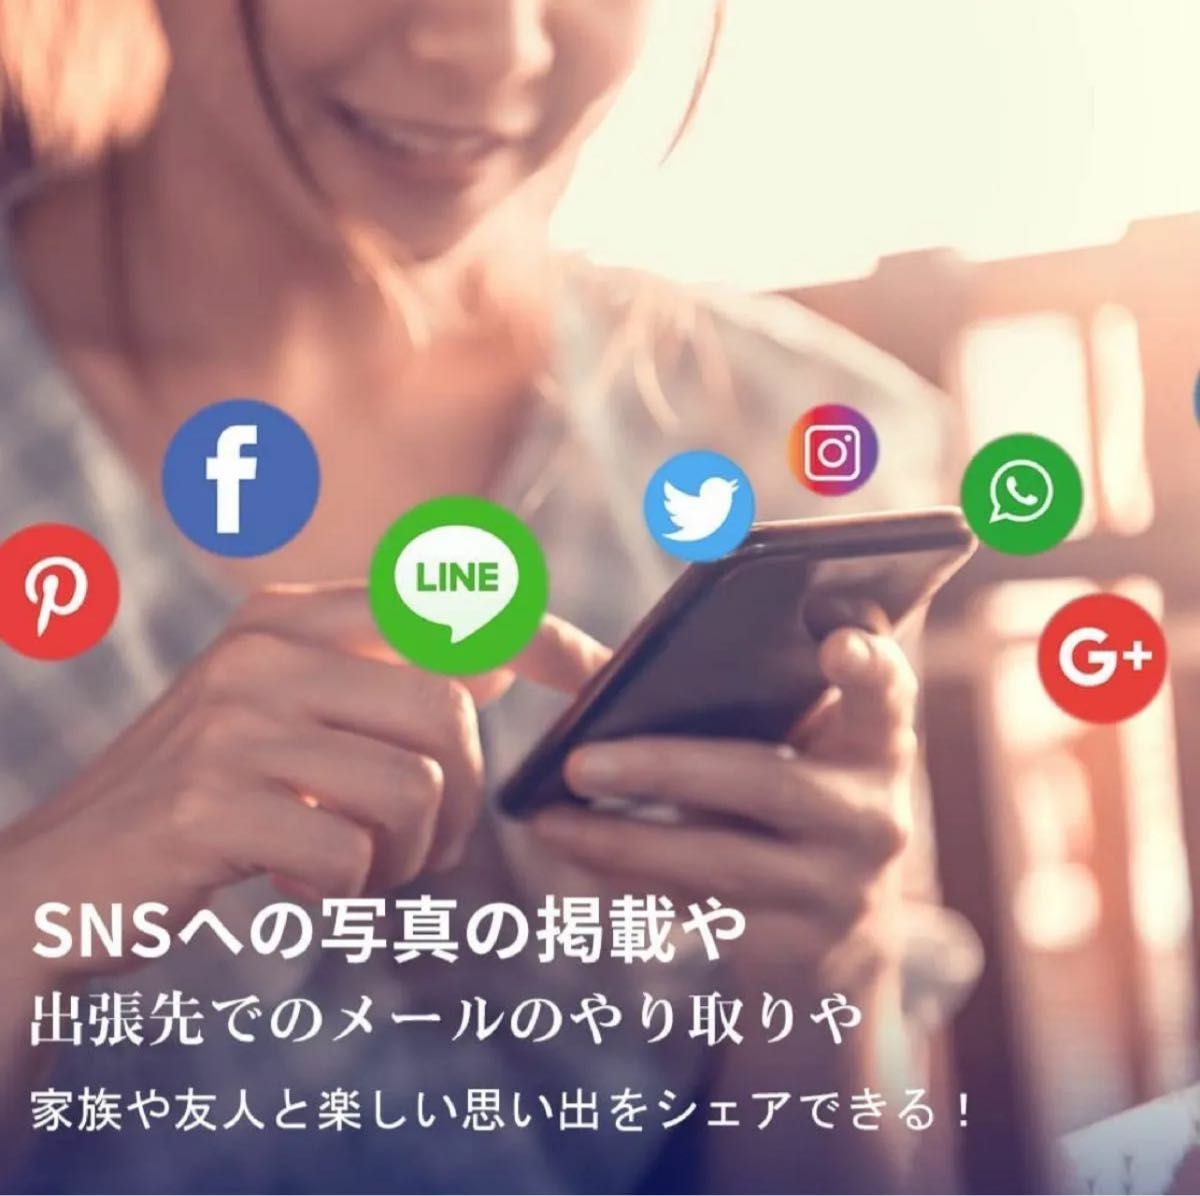 韓国 Korea sim card 4G-LTE 高速データ通信 SKTキャリア プリペイド SIMカード (4日間高速データ)